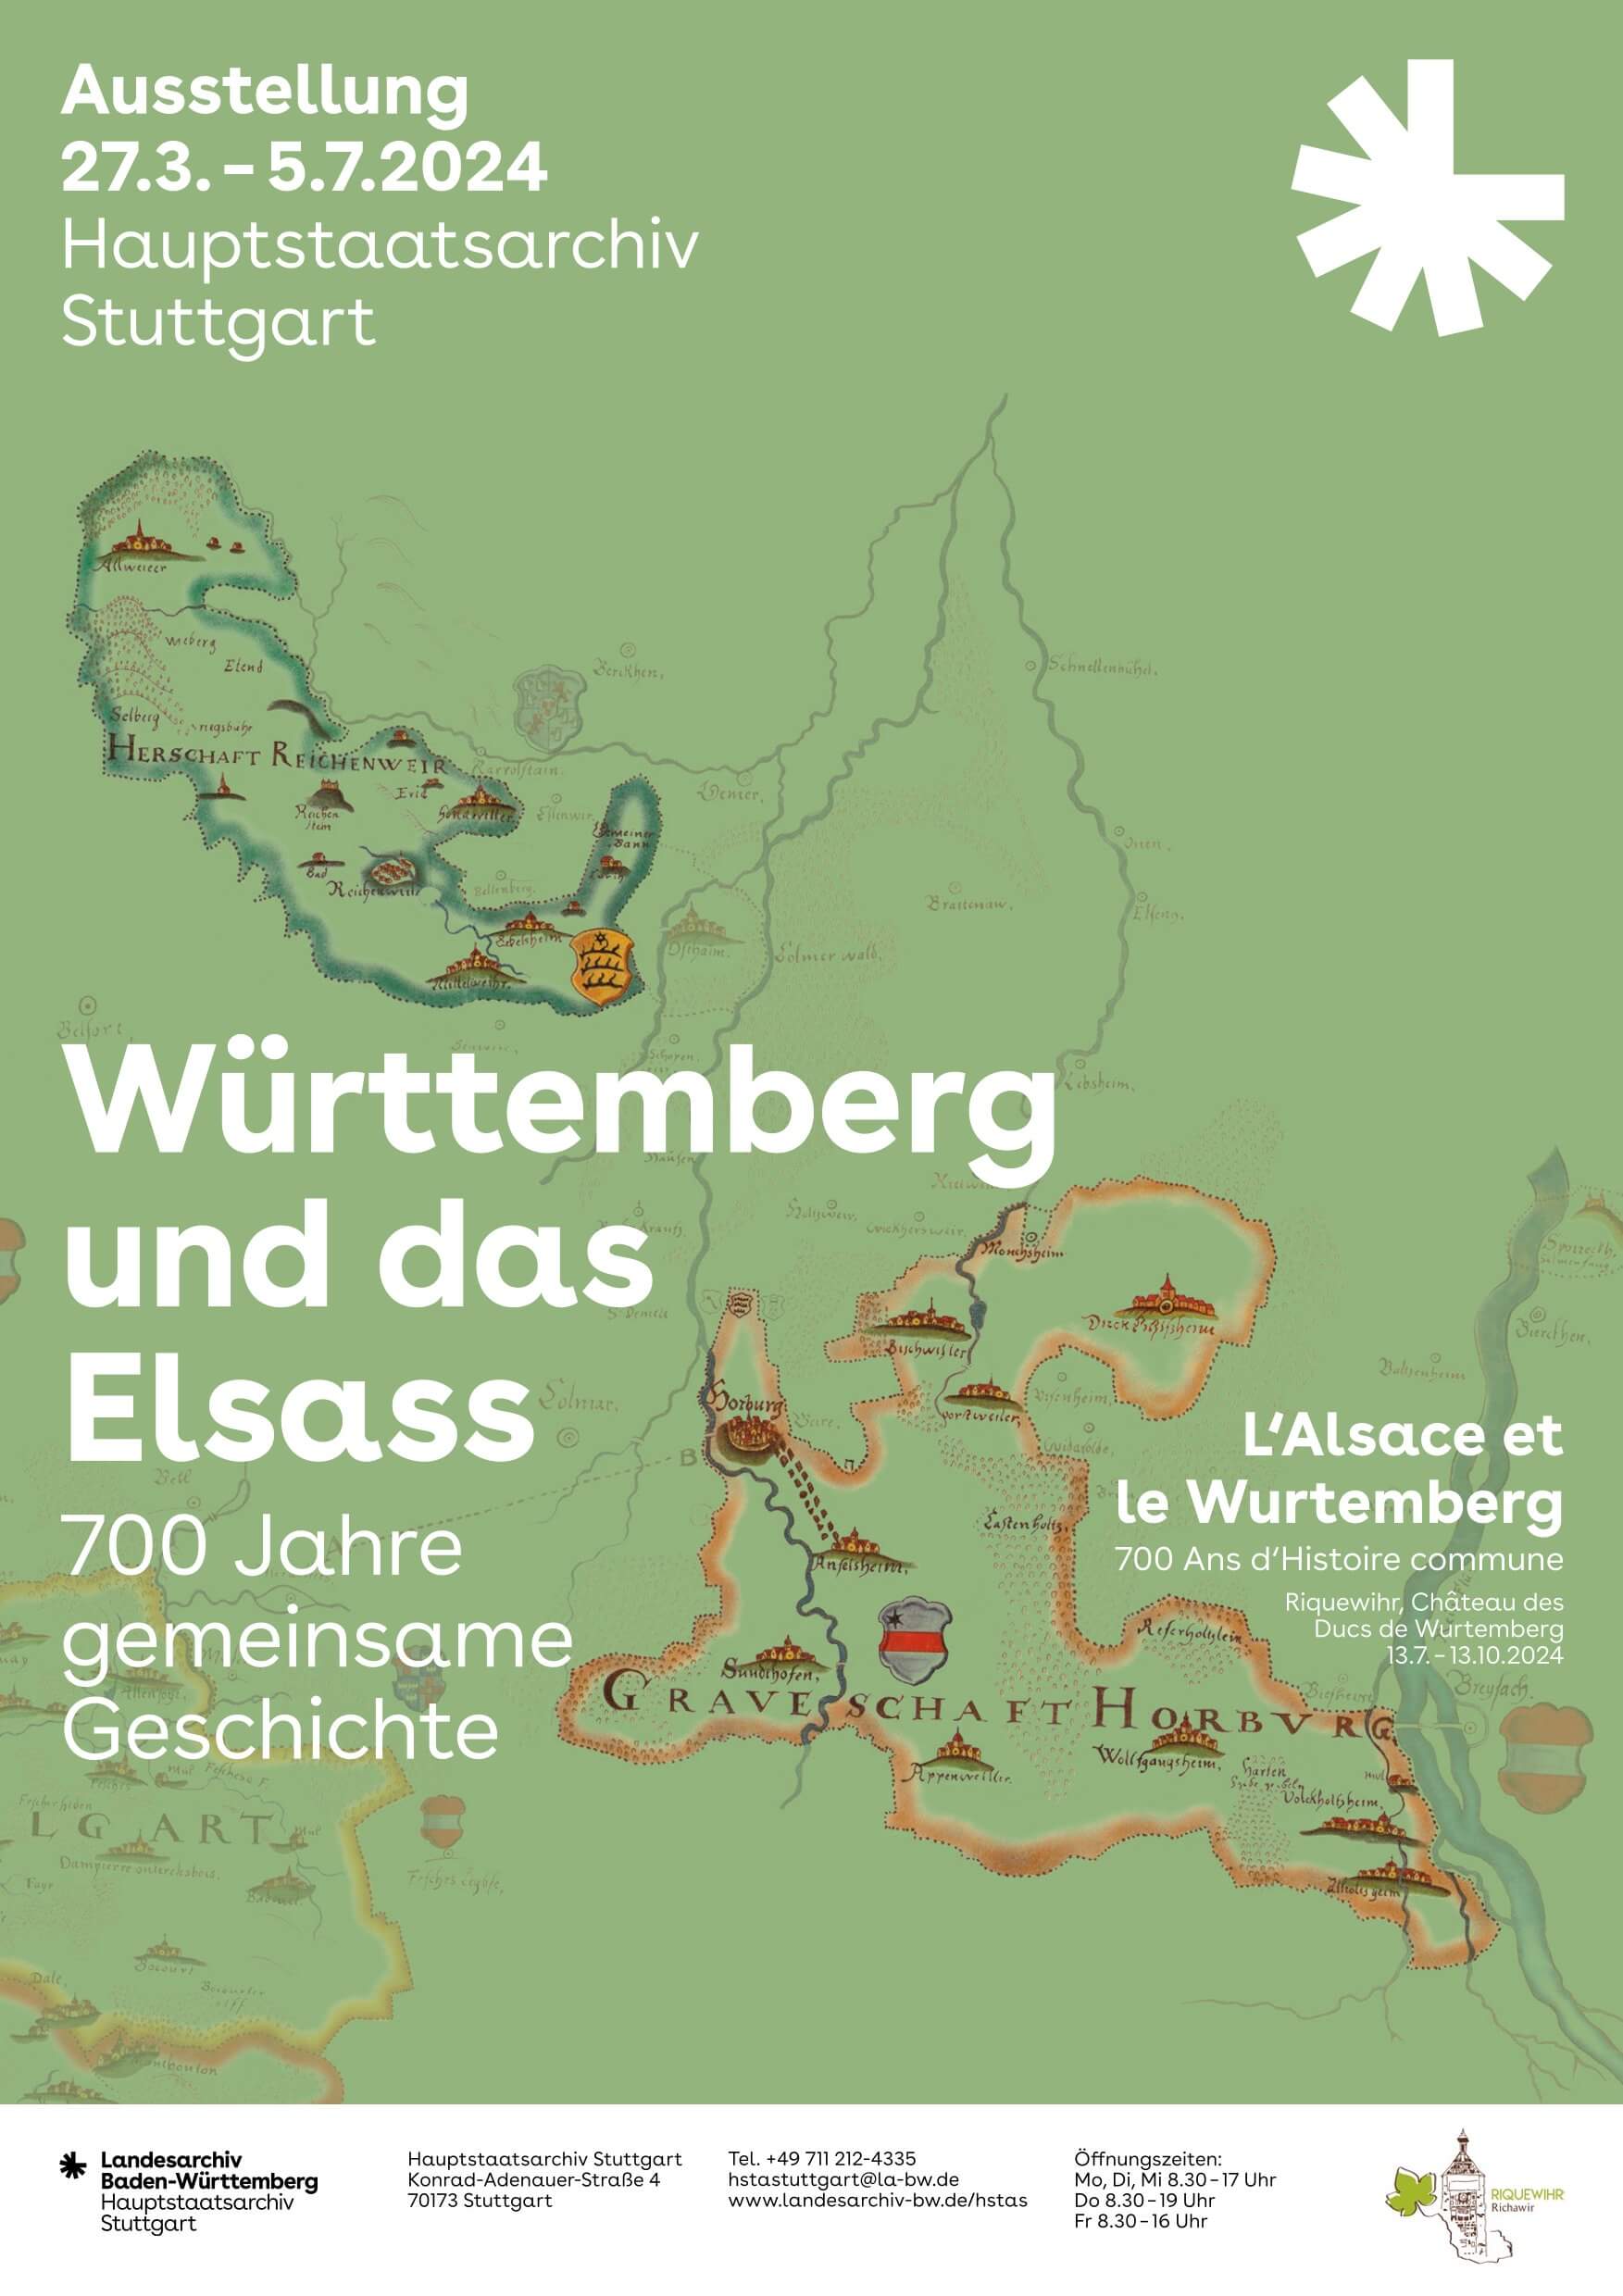 L’Alsace et le Wurtemberg: 700 Ans d’Histoire commune